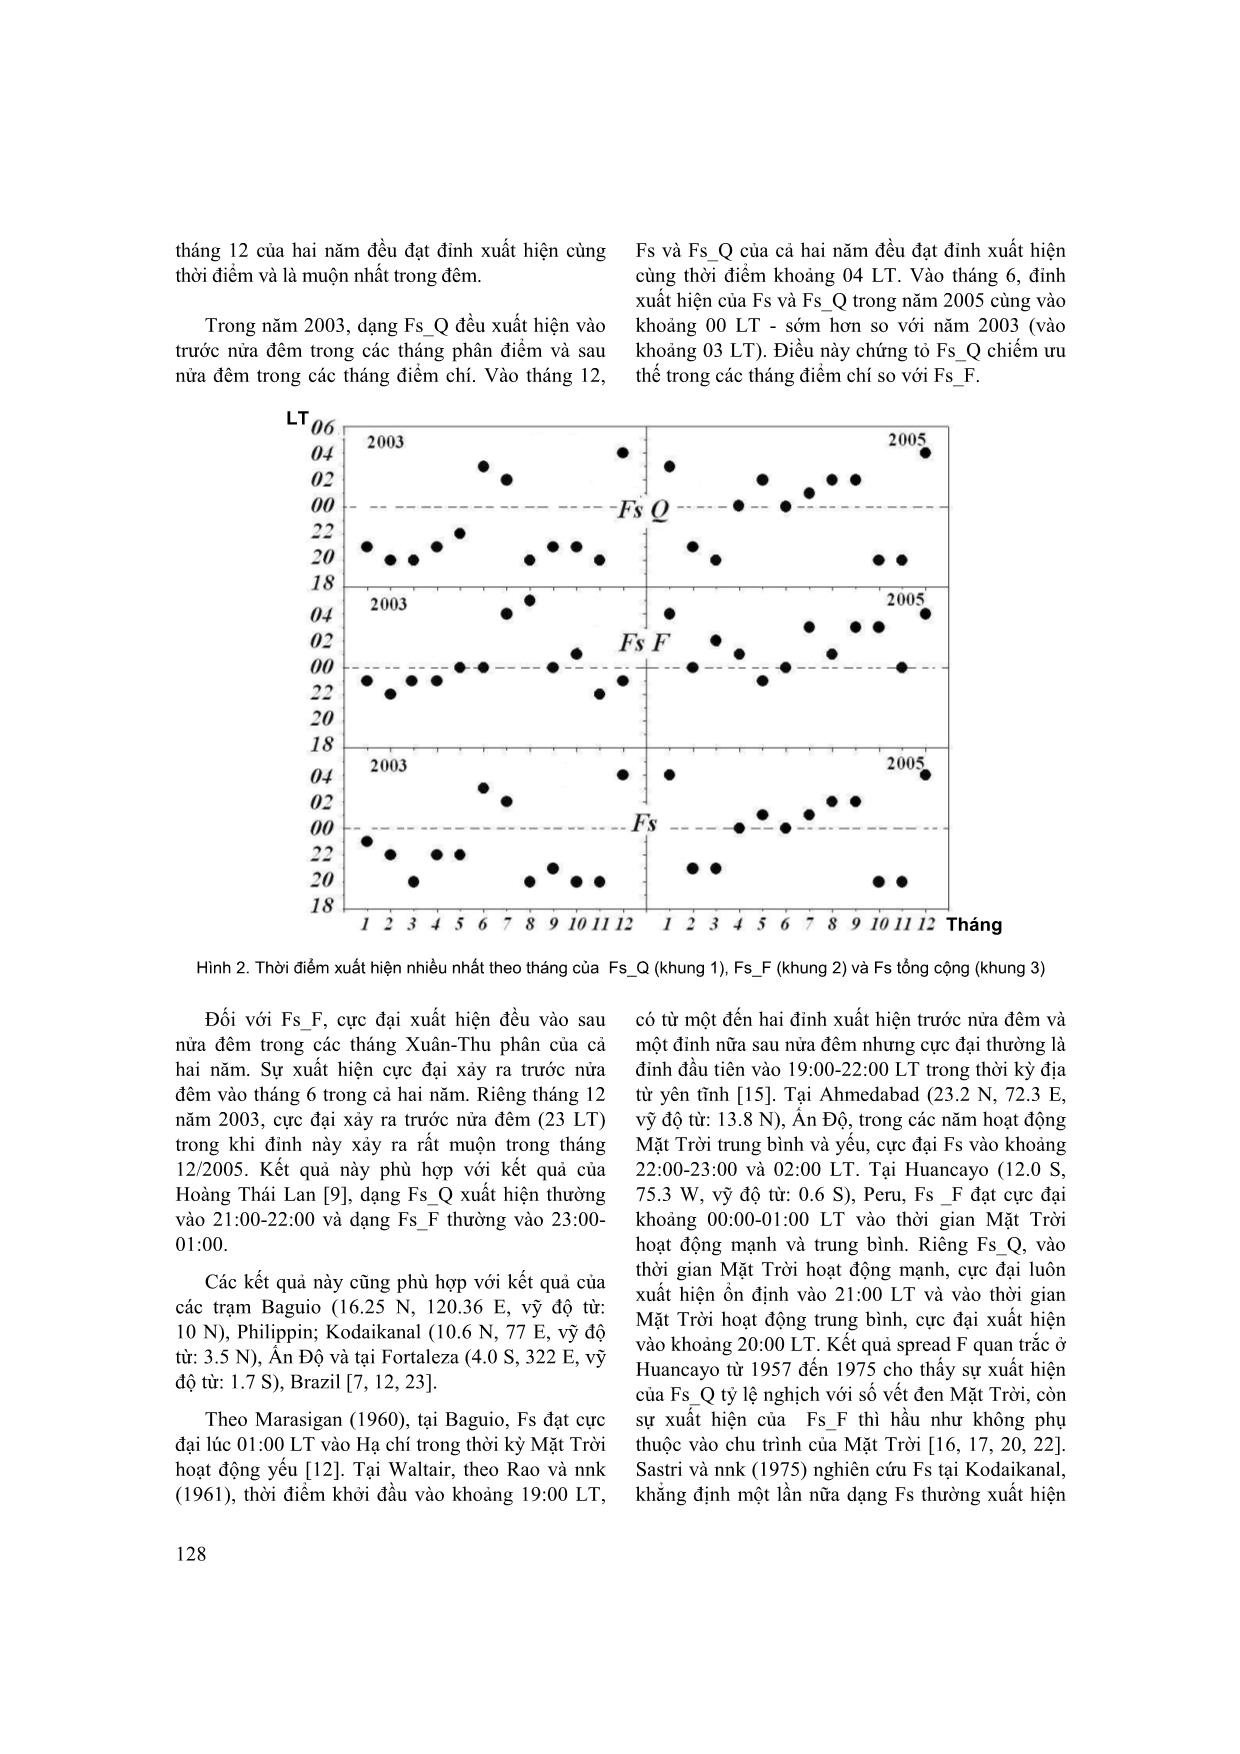 So sánh sự xuất hiện của Spread F xích đạo từ trong năm mặt trời hoạt động trung bình (2003) và hoạt động yếu (2005) trang 3